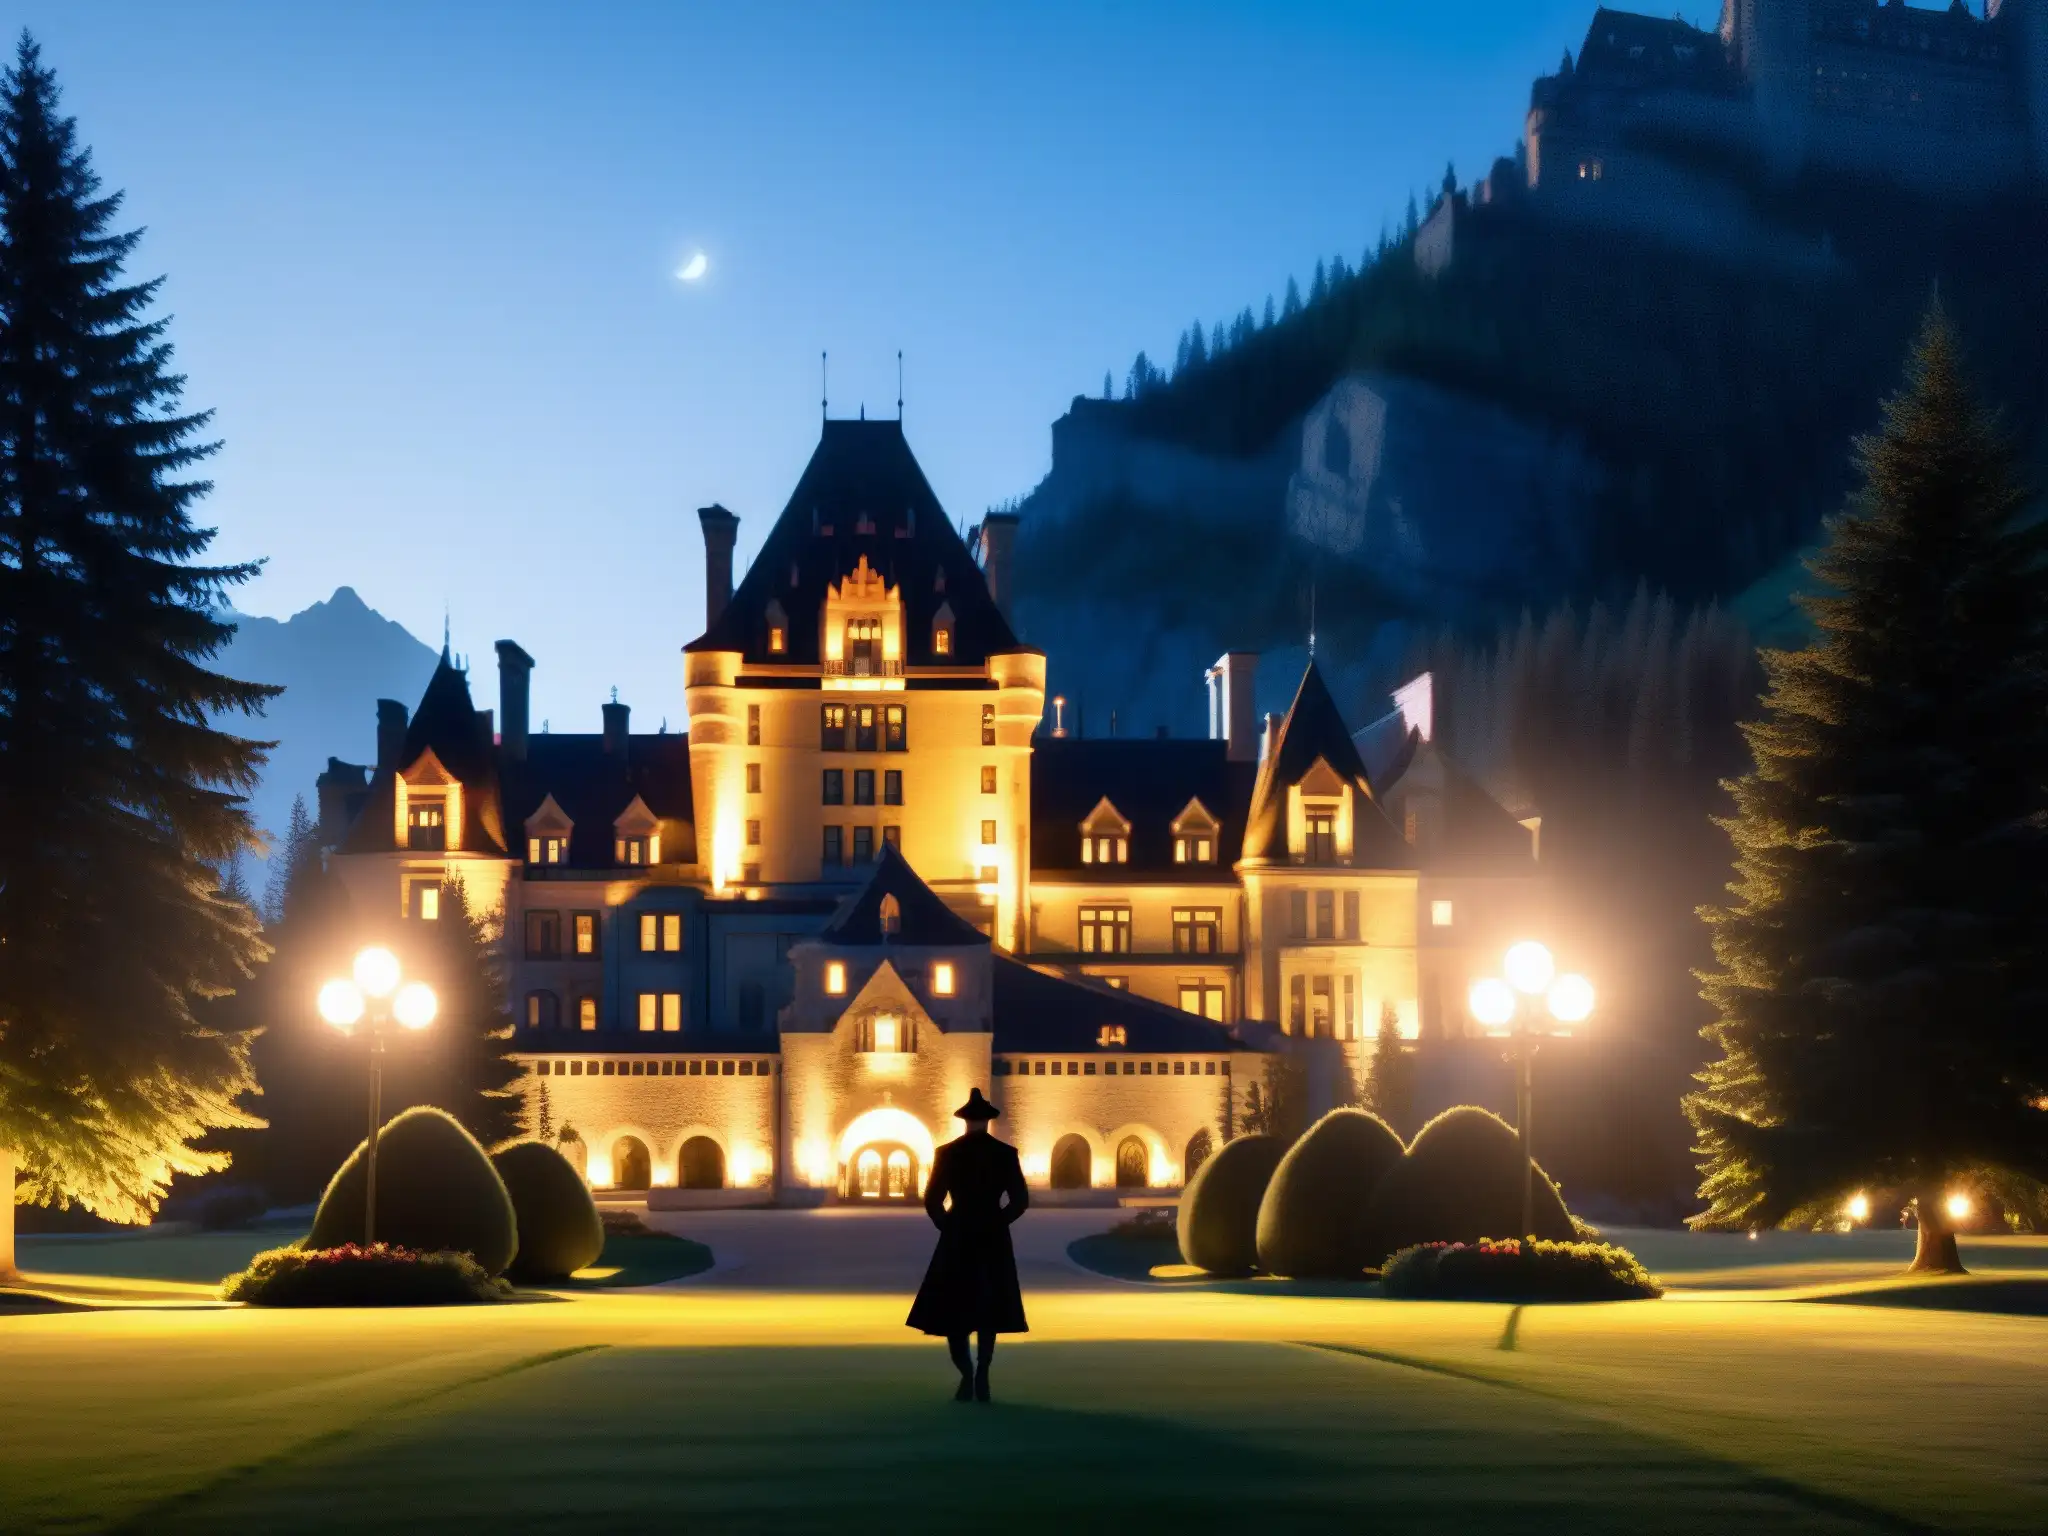 Figura en la niebla observa la misteriosa fachada gótica del hotel encantado Fairmont Banff en una noche de luna